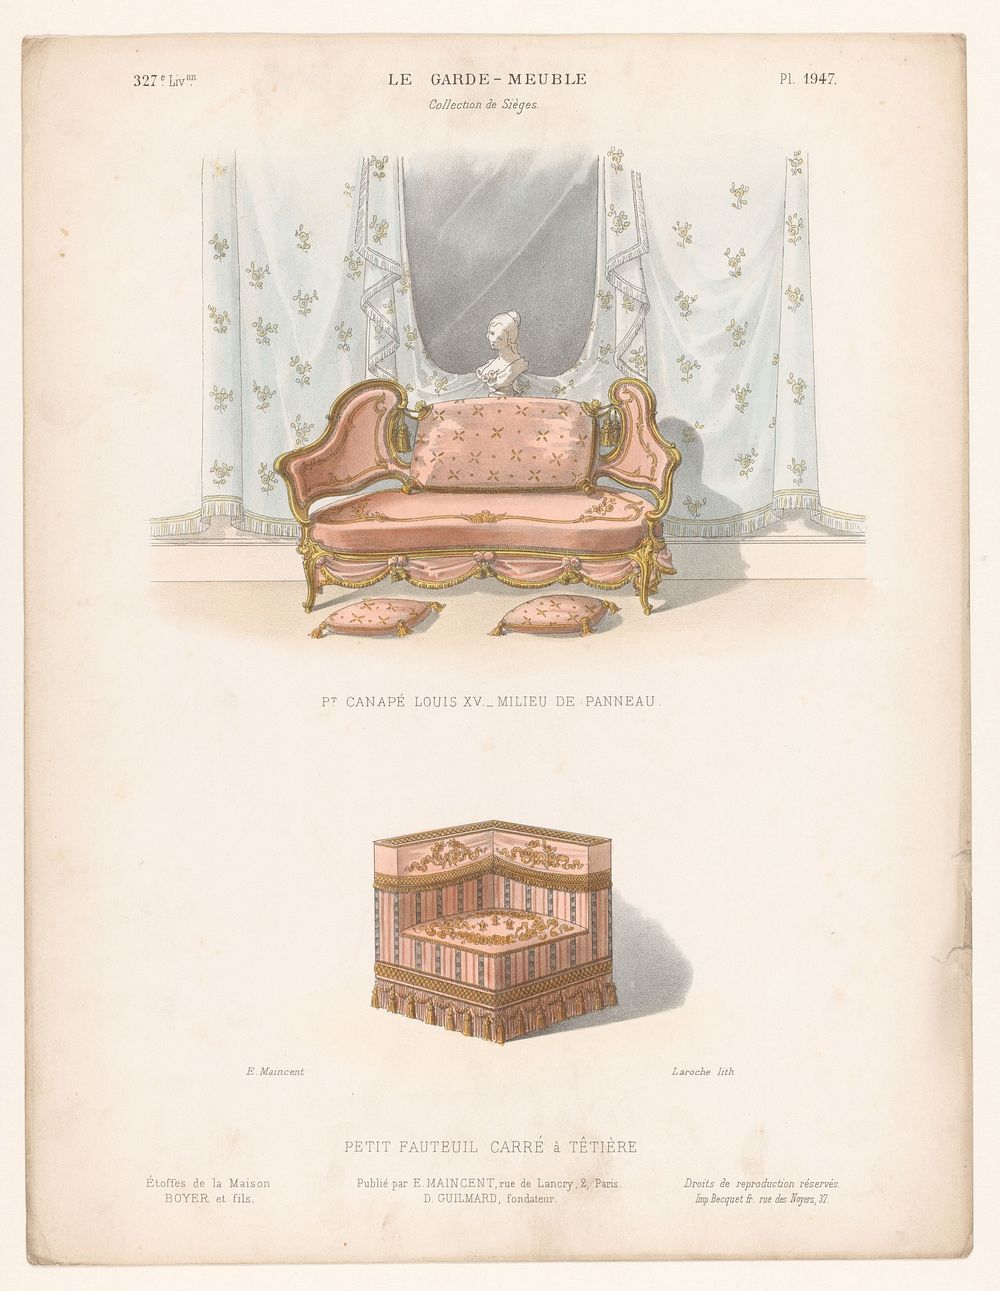 Canapé en fauteuil (1885 - 1895) by Léon Laroche, Becquet frères, Eugène Maincent and Désiré Guilmard